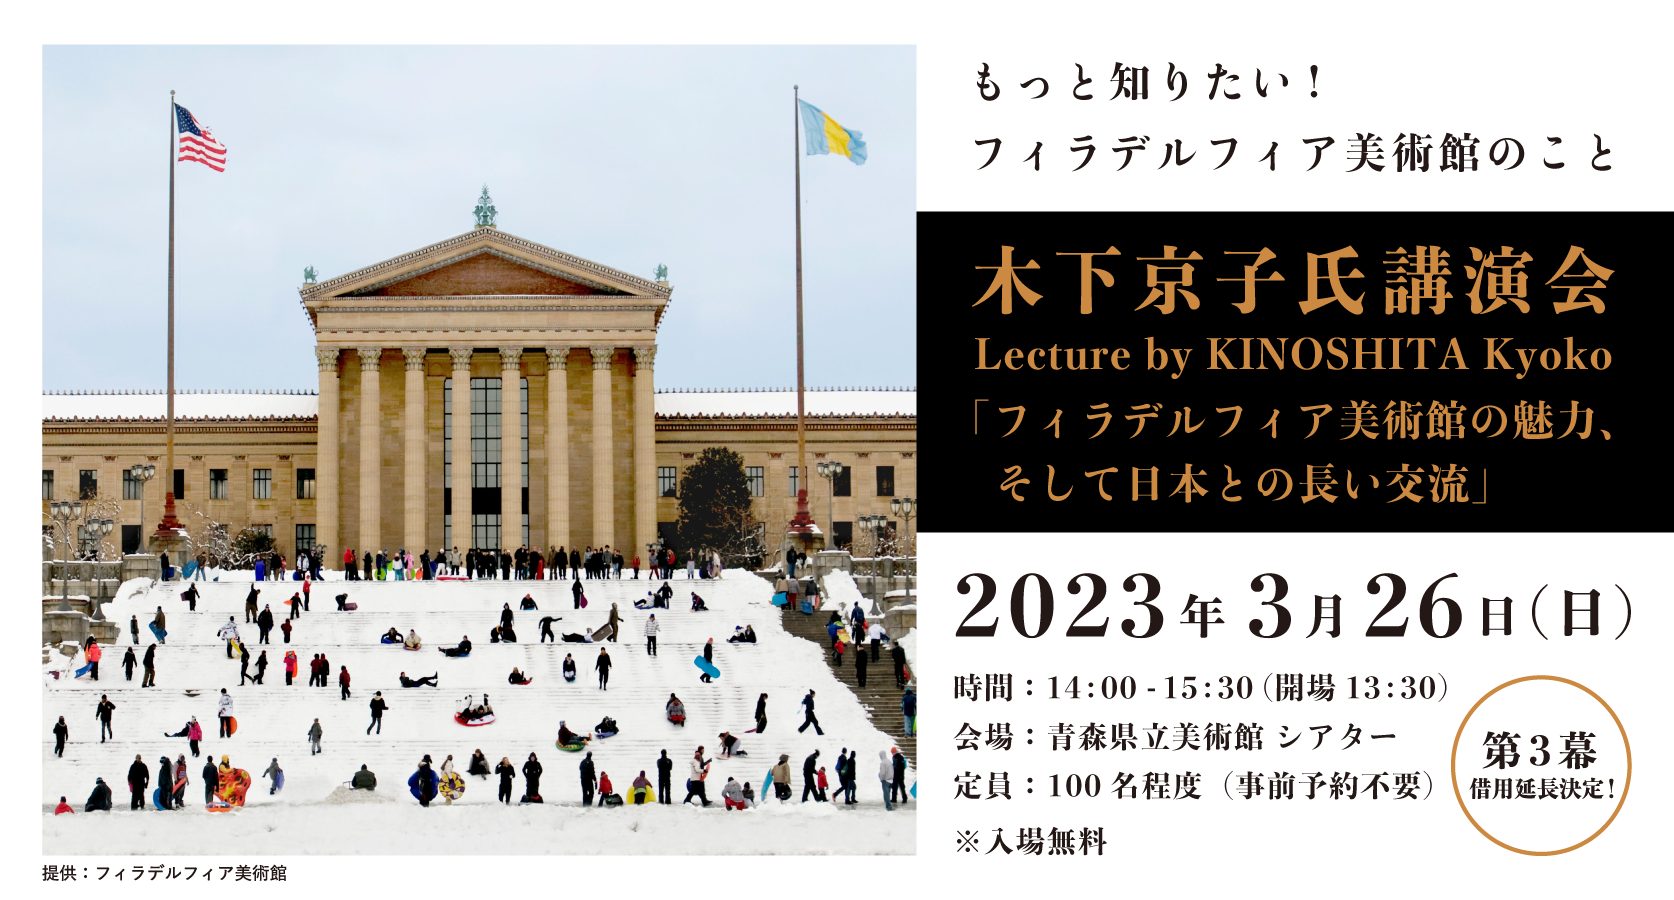 木下京子氏講演会　「フィラデルフィア美術館の魅力、そして日本との長い交流」